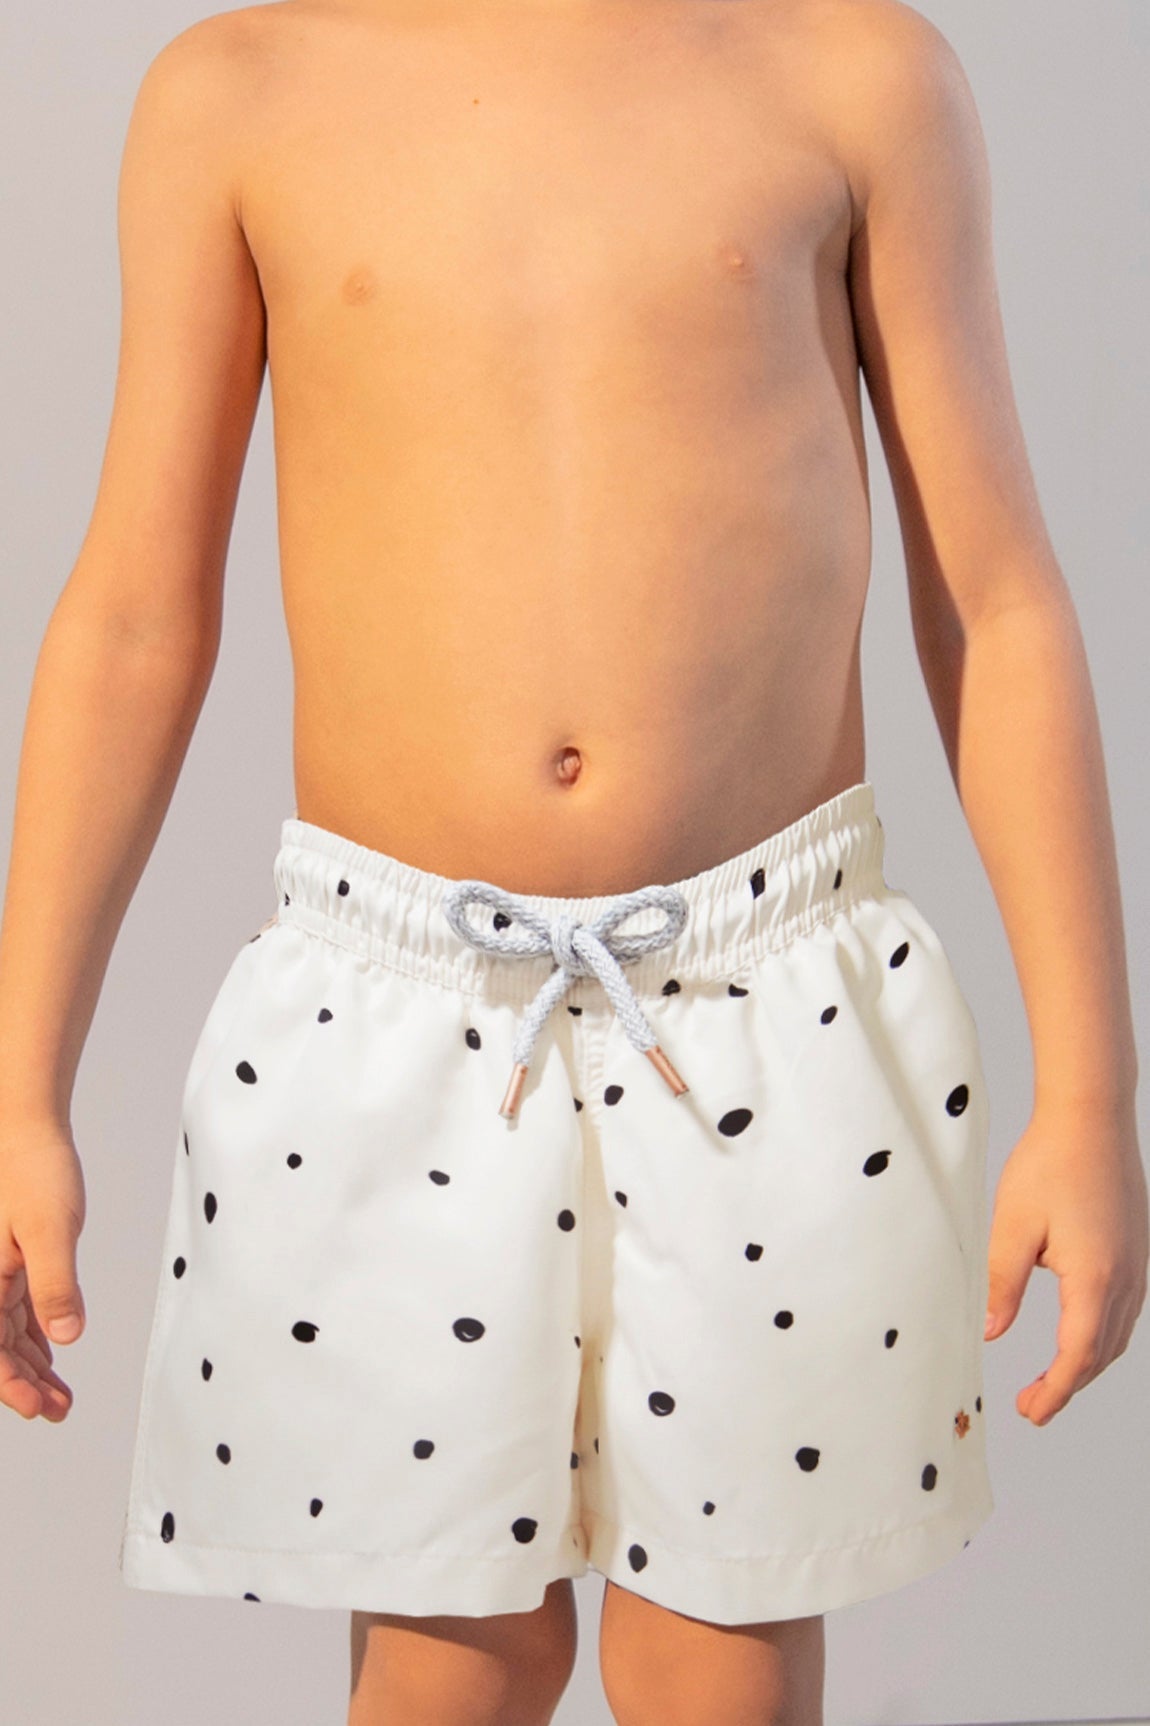 Swim Trunk Freckel Canvas Boy - ANCORA